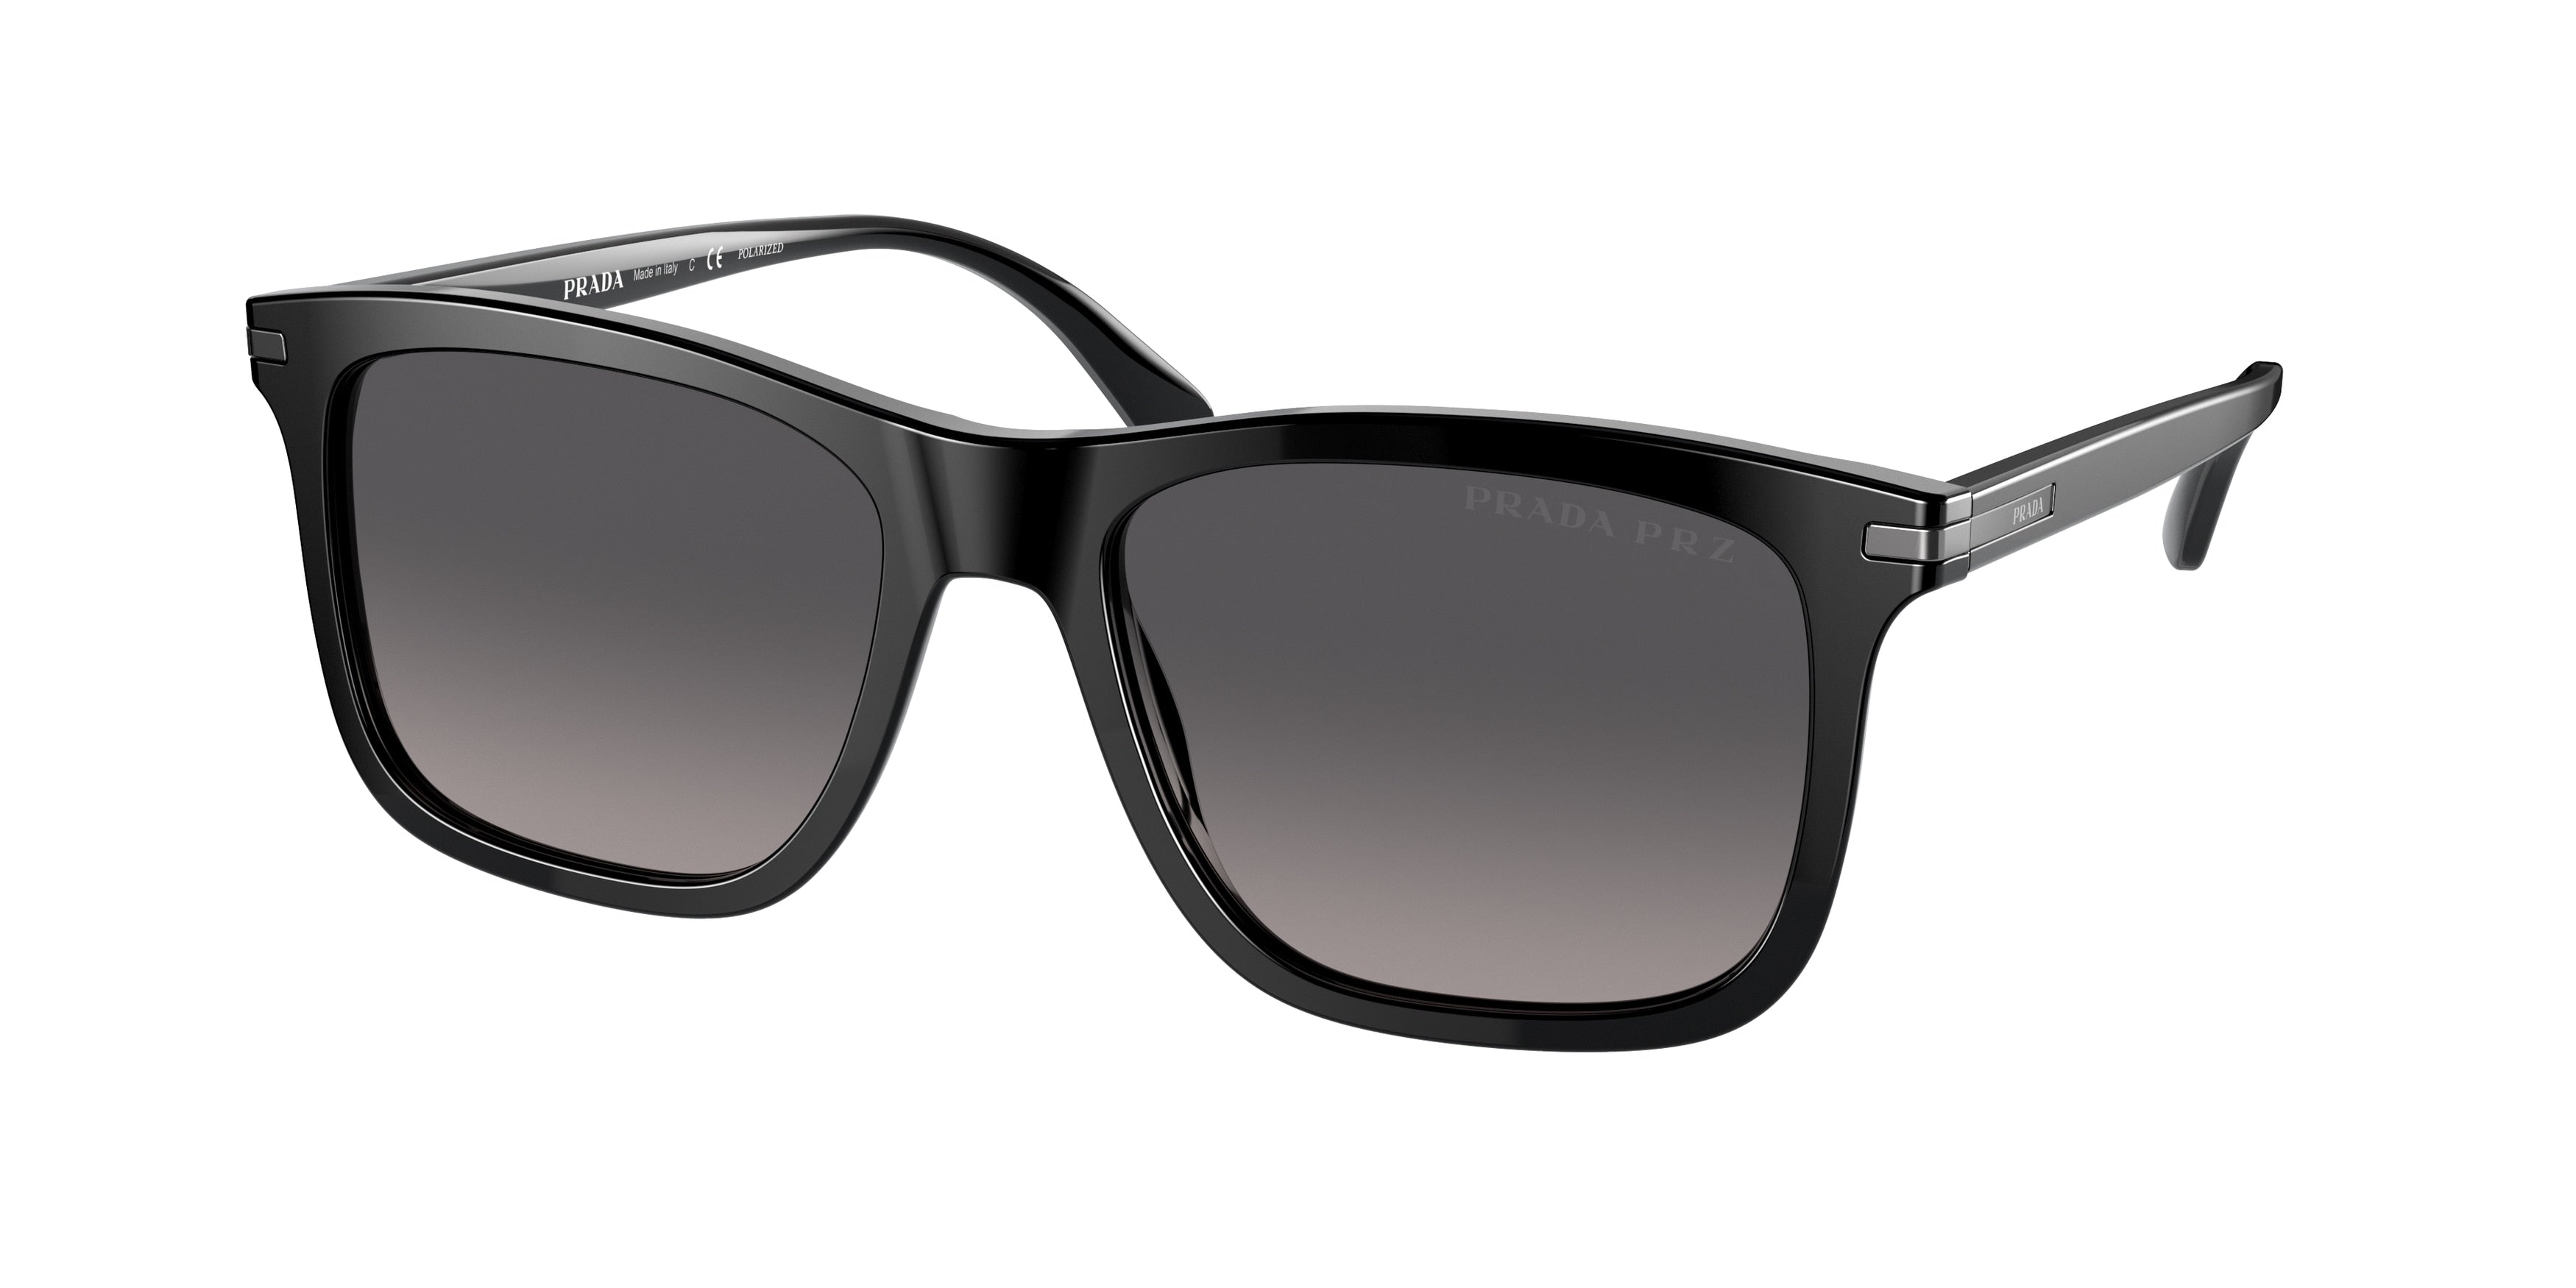 Prada PR18WS Rectangle Sunglasses  1AB09G-Black 56-150-18 - Color Map Black